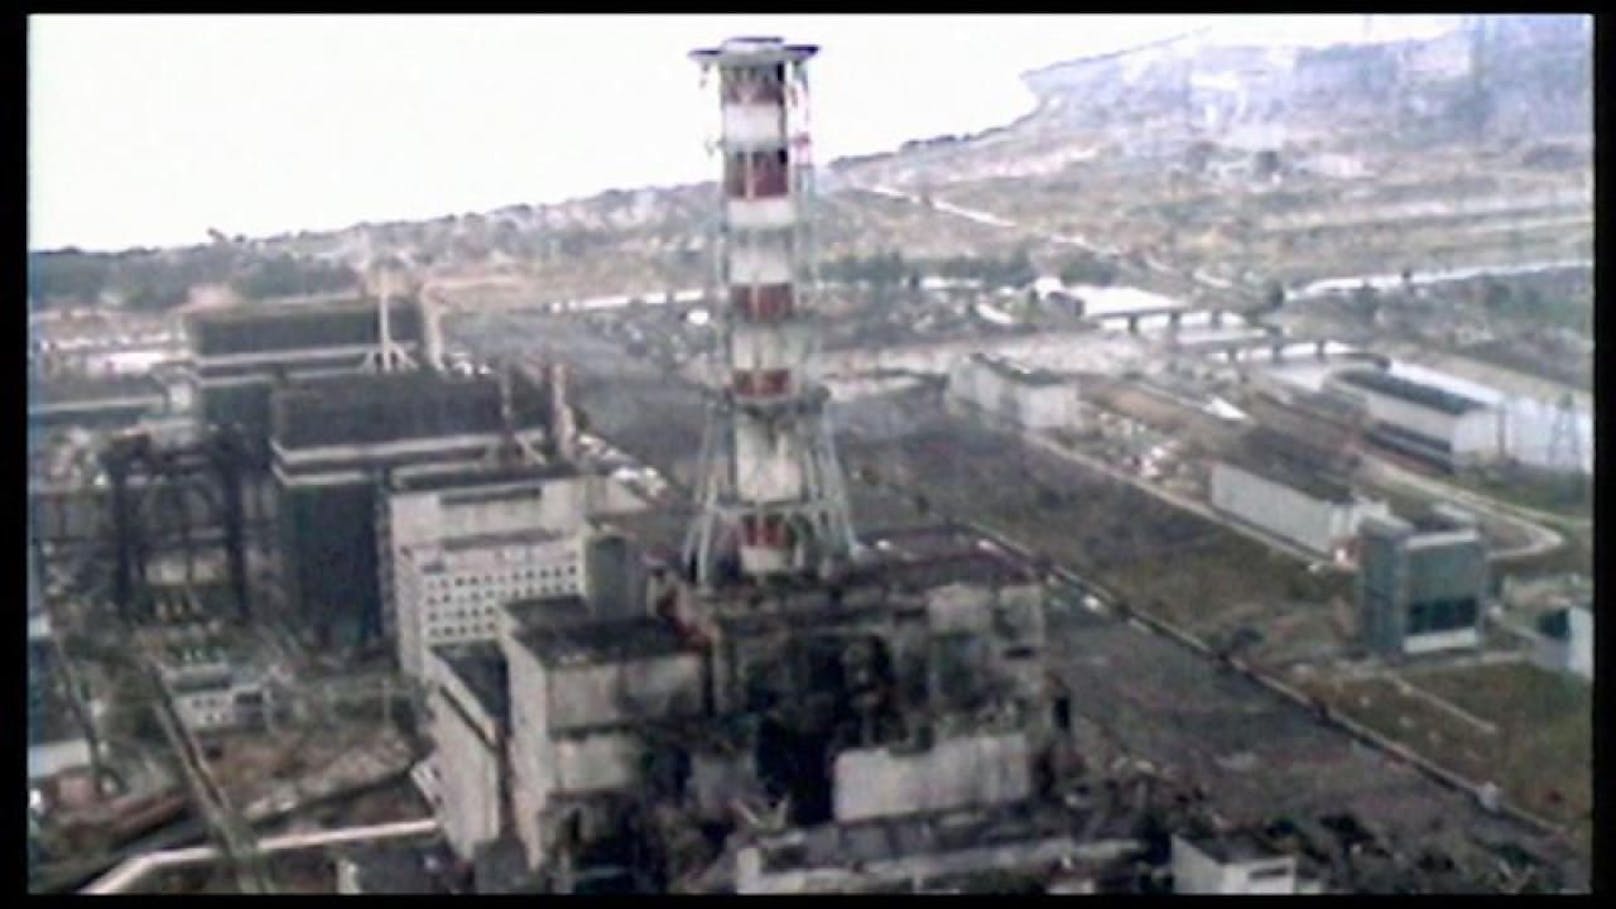 Die Nuklearkatastrophe ereignete sich am 26. April 1986 in Reaktor 4 des Kernkraftwerks Tschernobyl nahe der ukrainischen Stadt Prypjat.